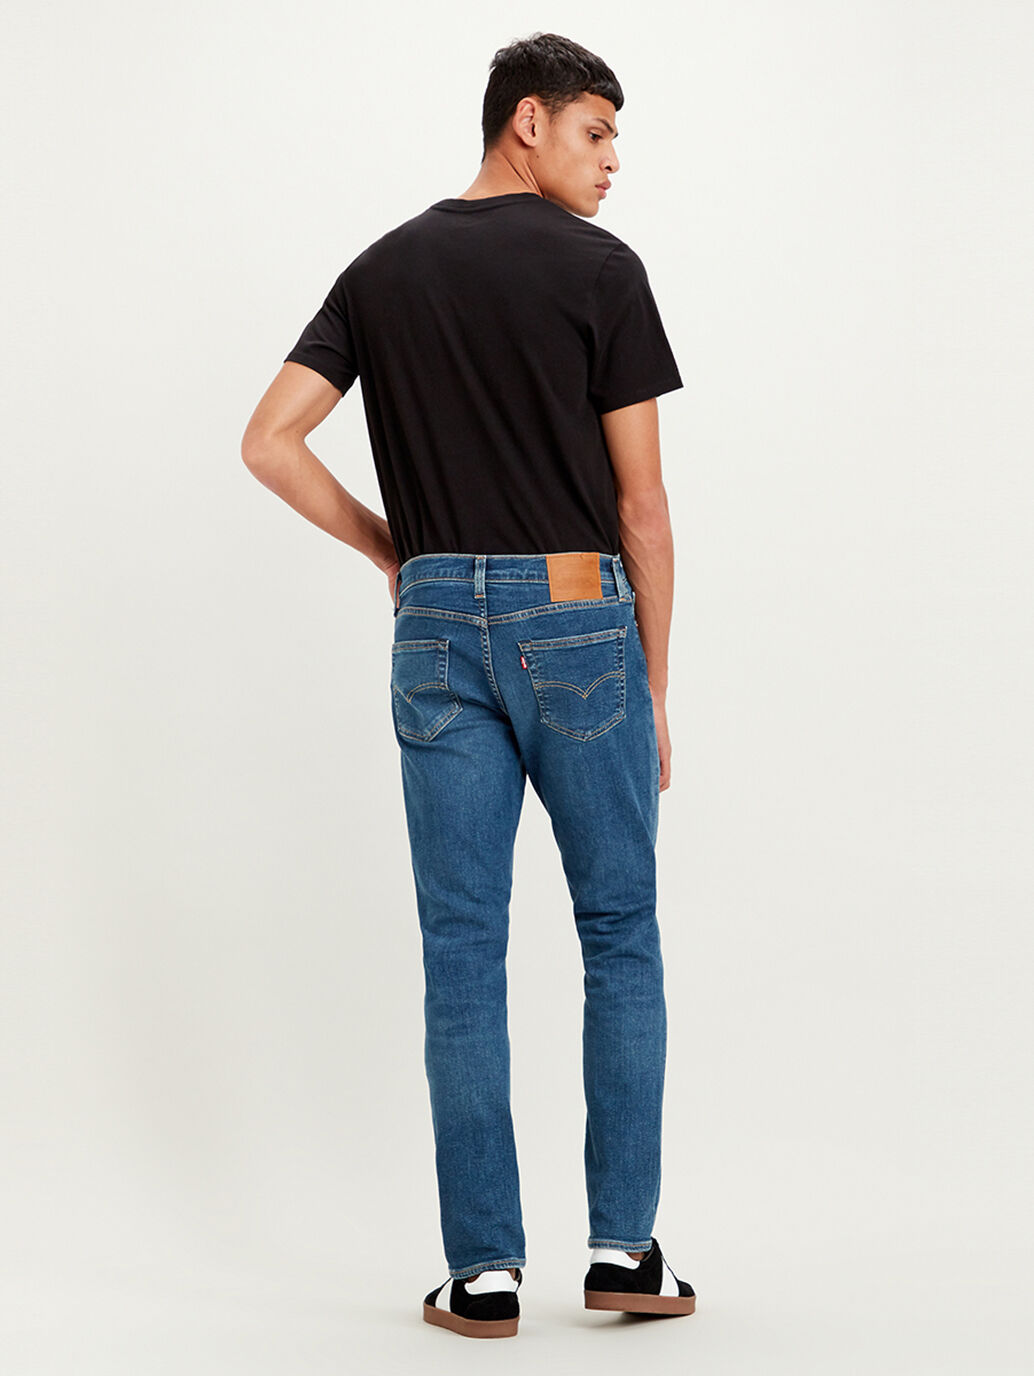 levis jeans myer